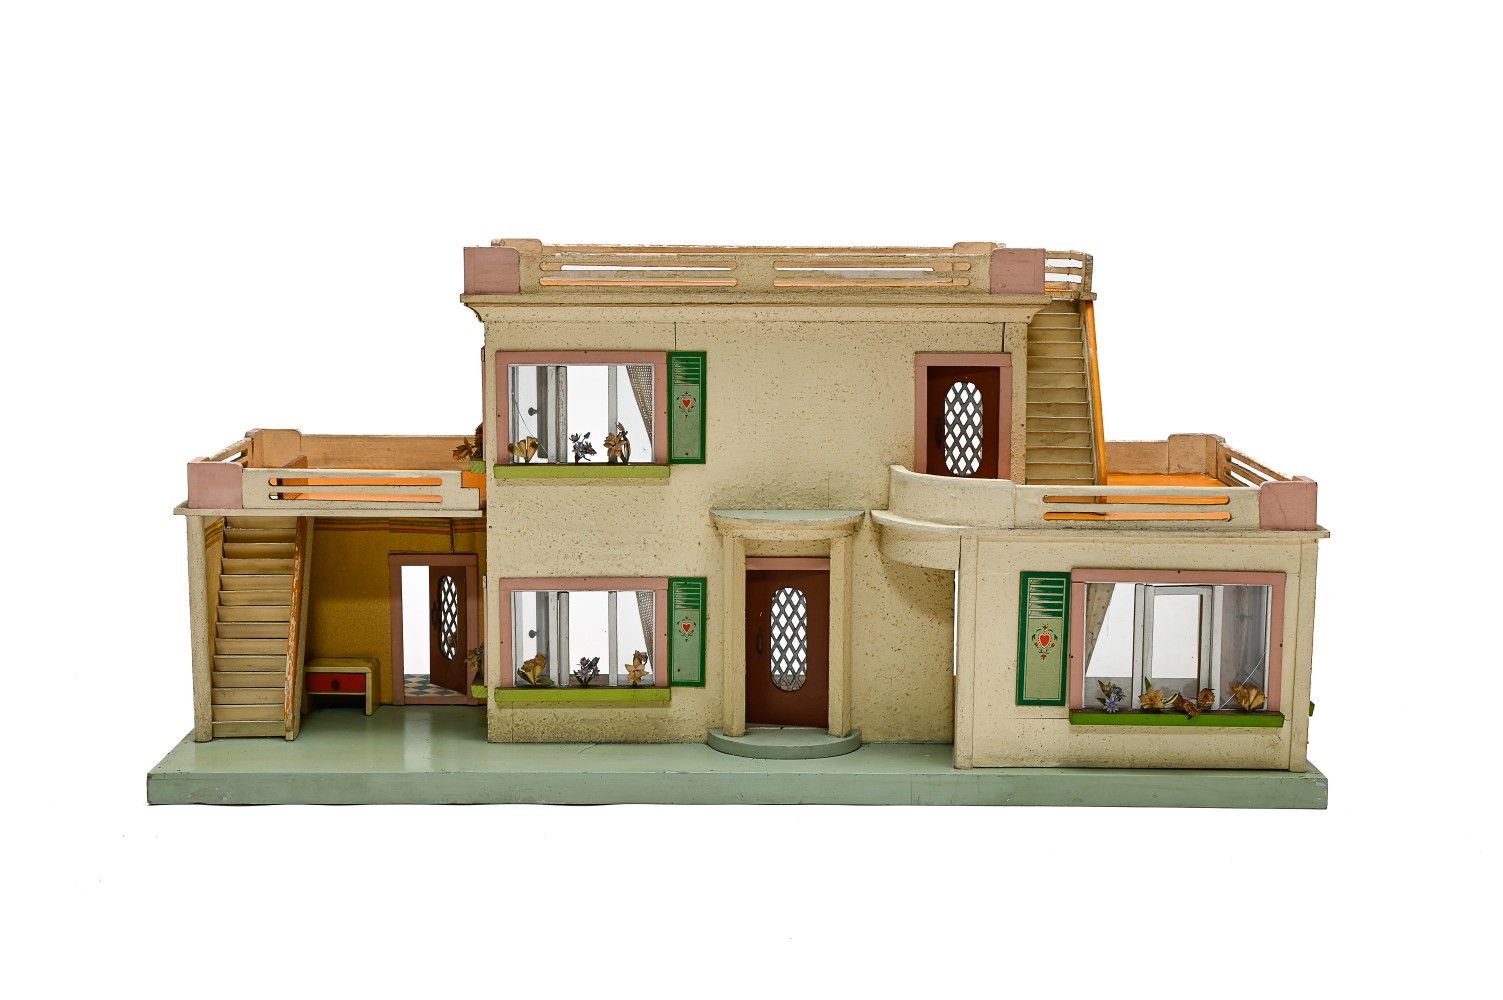 Null TRABAJO DE LOS AÑOS 50

Casa de muñecas modernista



de madera pintada y c&hellip;